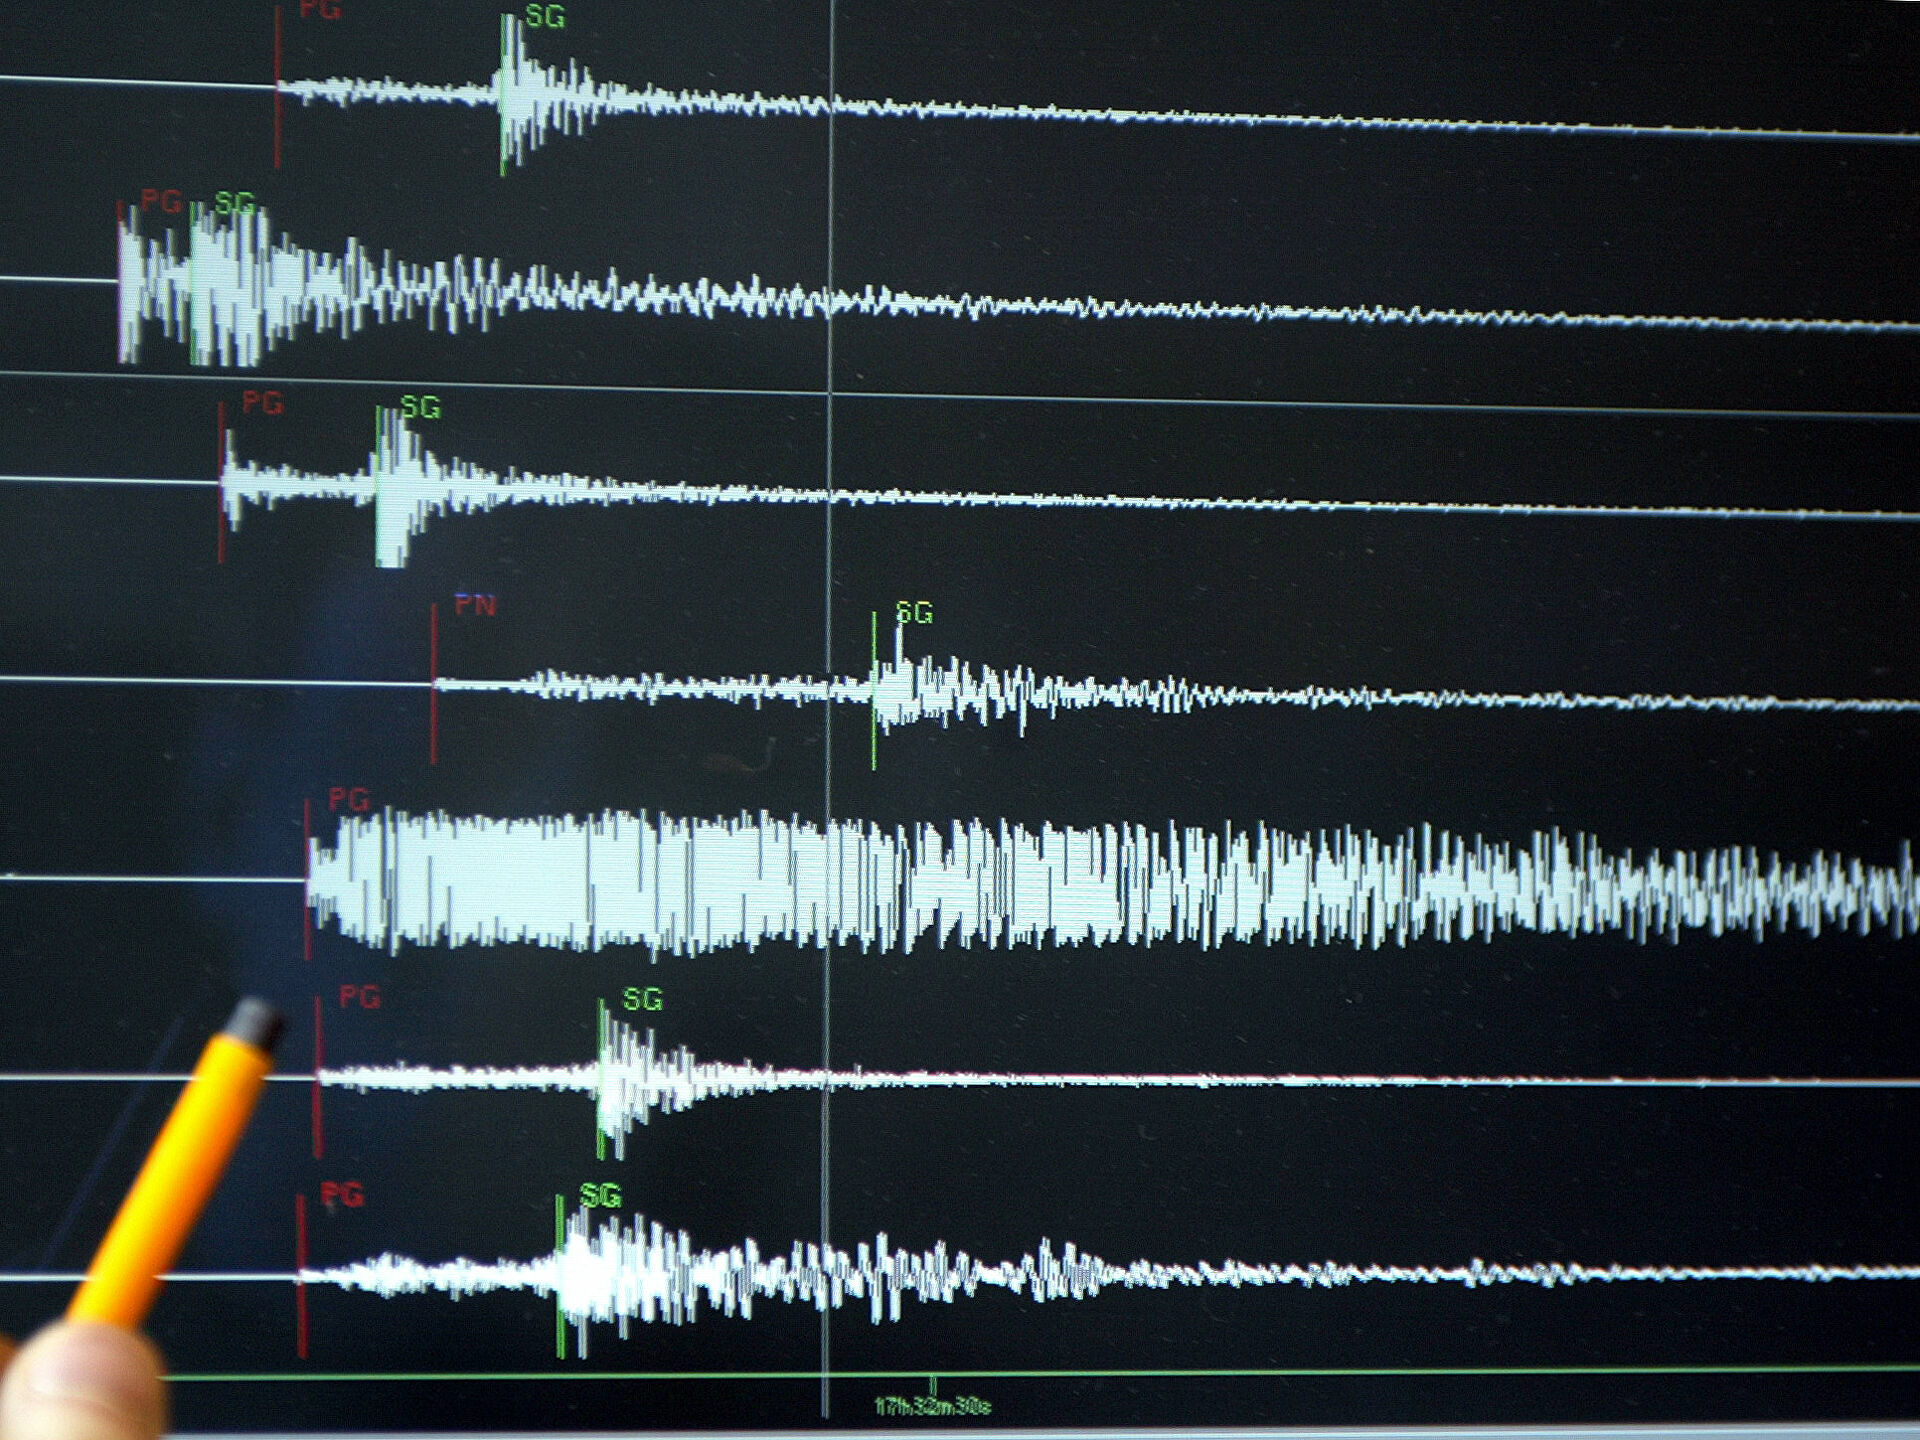 Son dakika | AFAD ve Kandilli Rasathanesi duyurdu: Tokat'ın Pazar ilçesinde 3.9 büyüklüğünde deprem